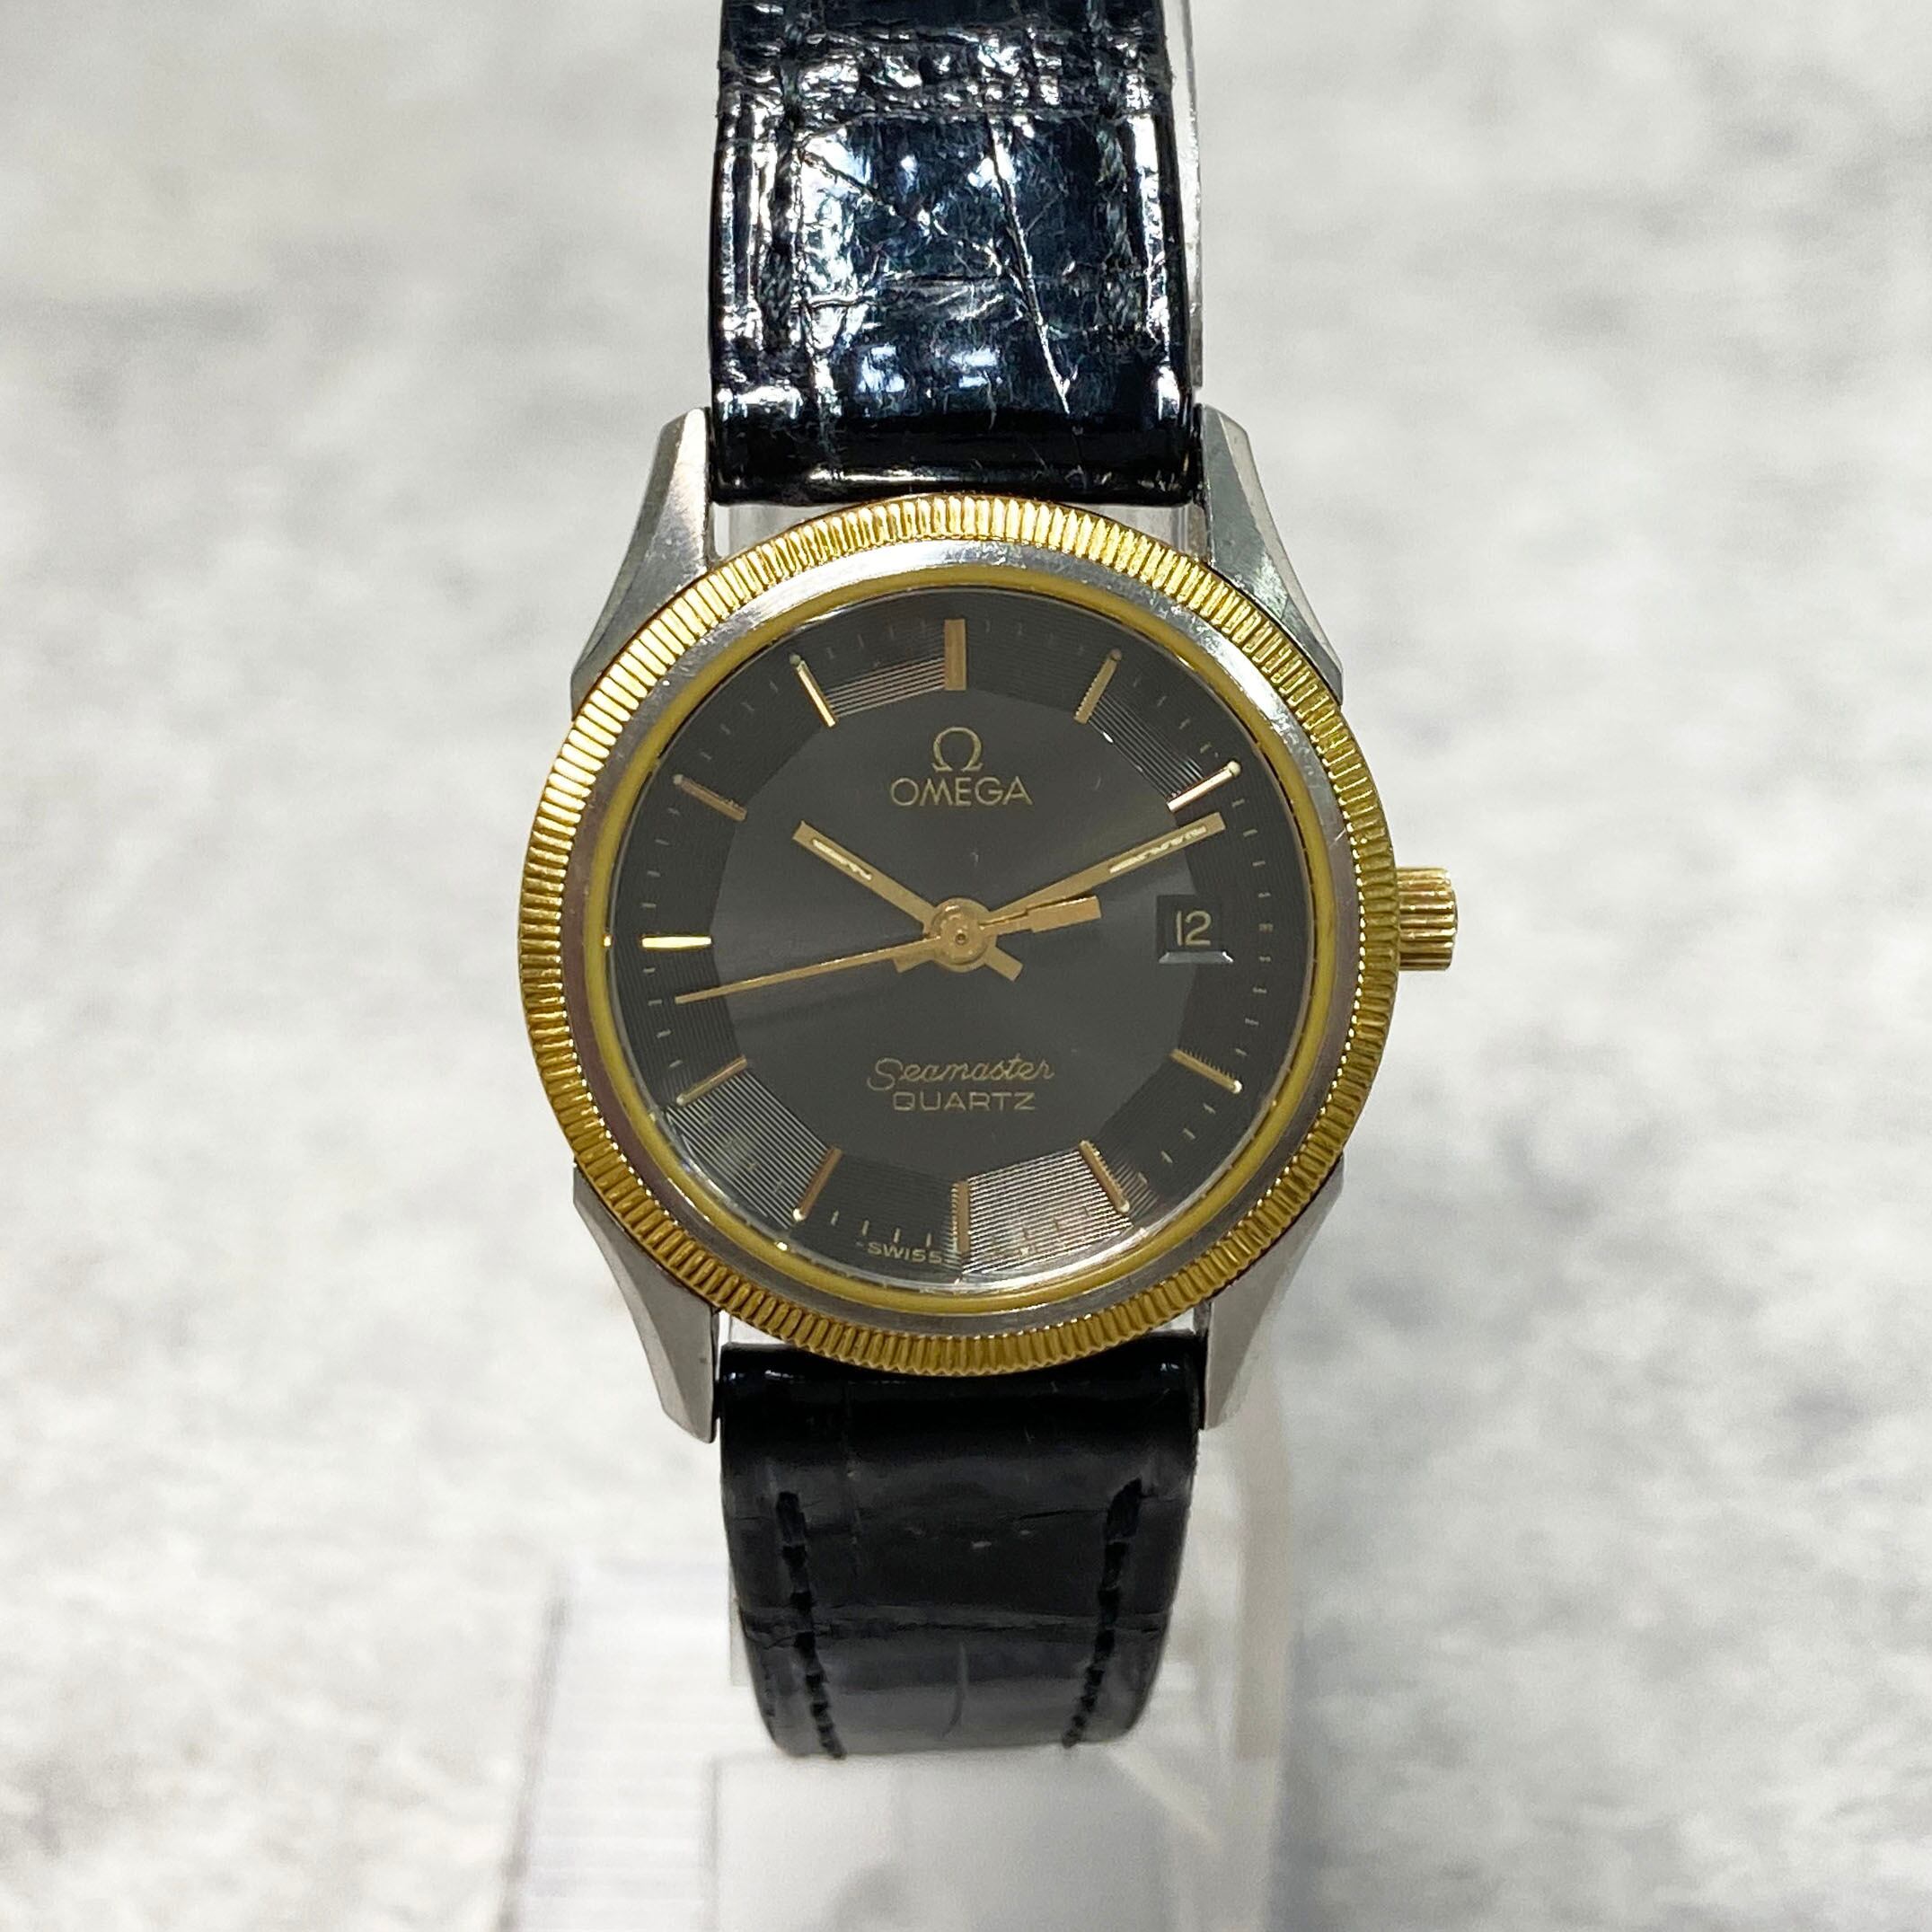 OMEGA オメガ シーマスター デイト SS 革ベルト ブラック文字盤 腕時計 レディース クォーツ 4686-202111